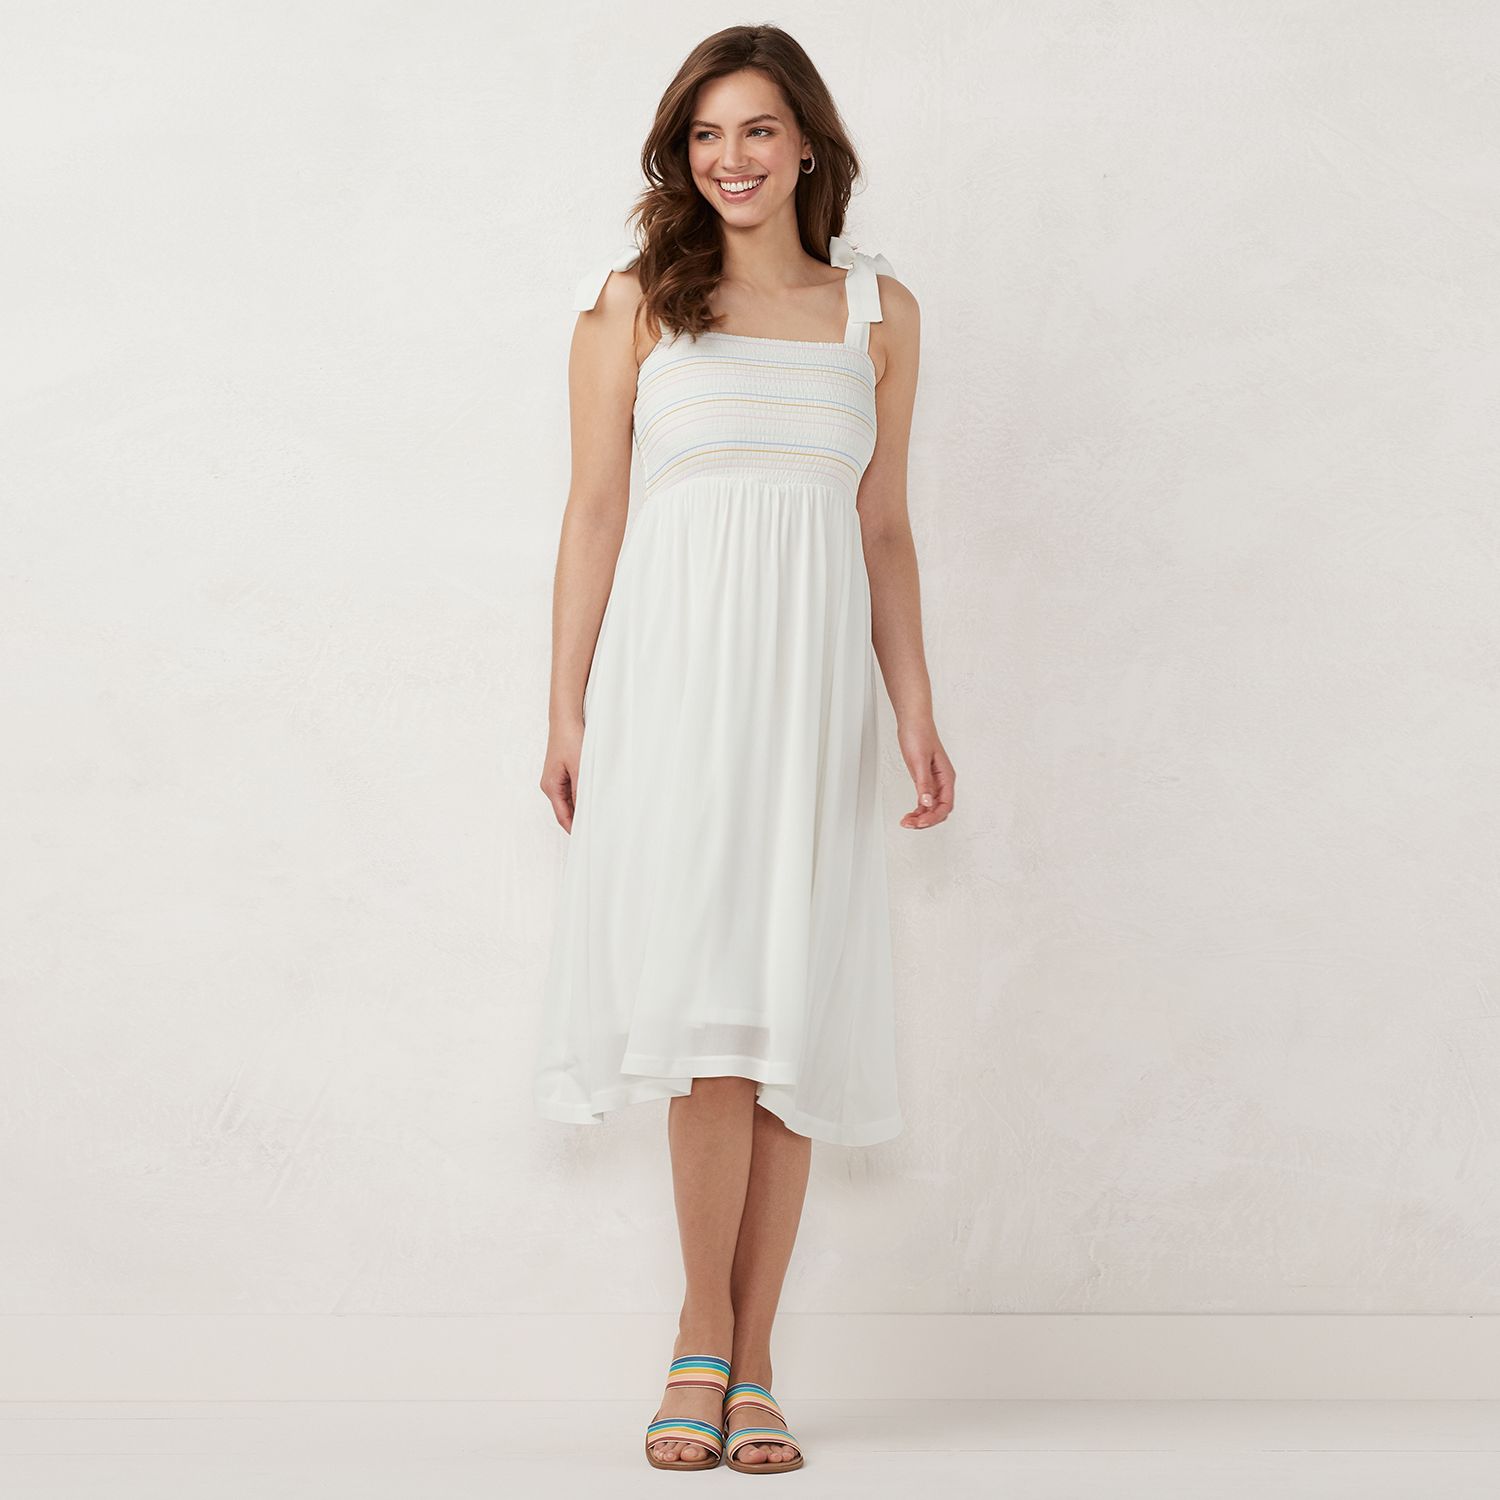 kohls girls white dress